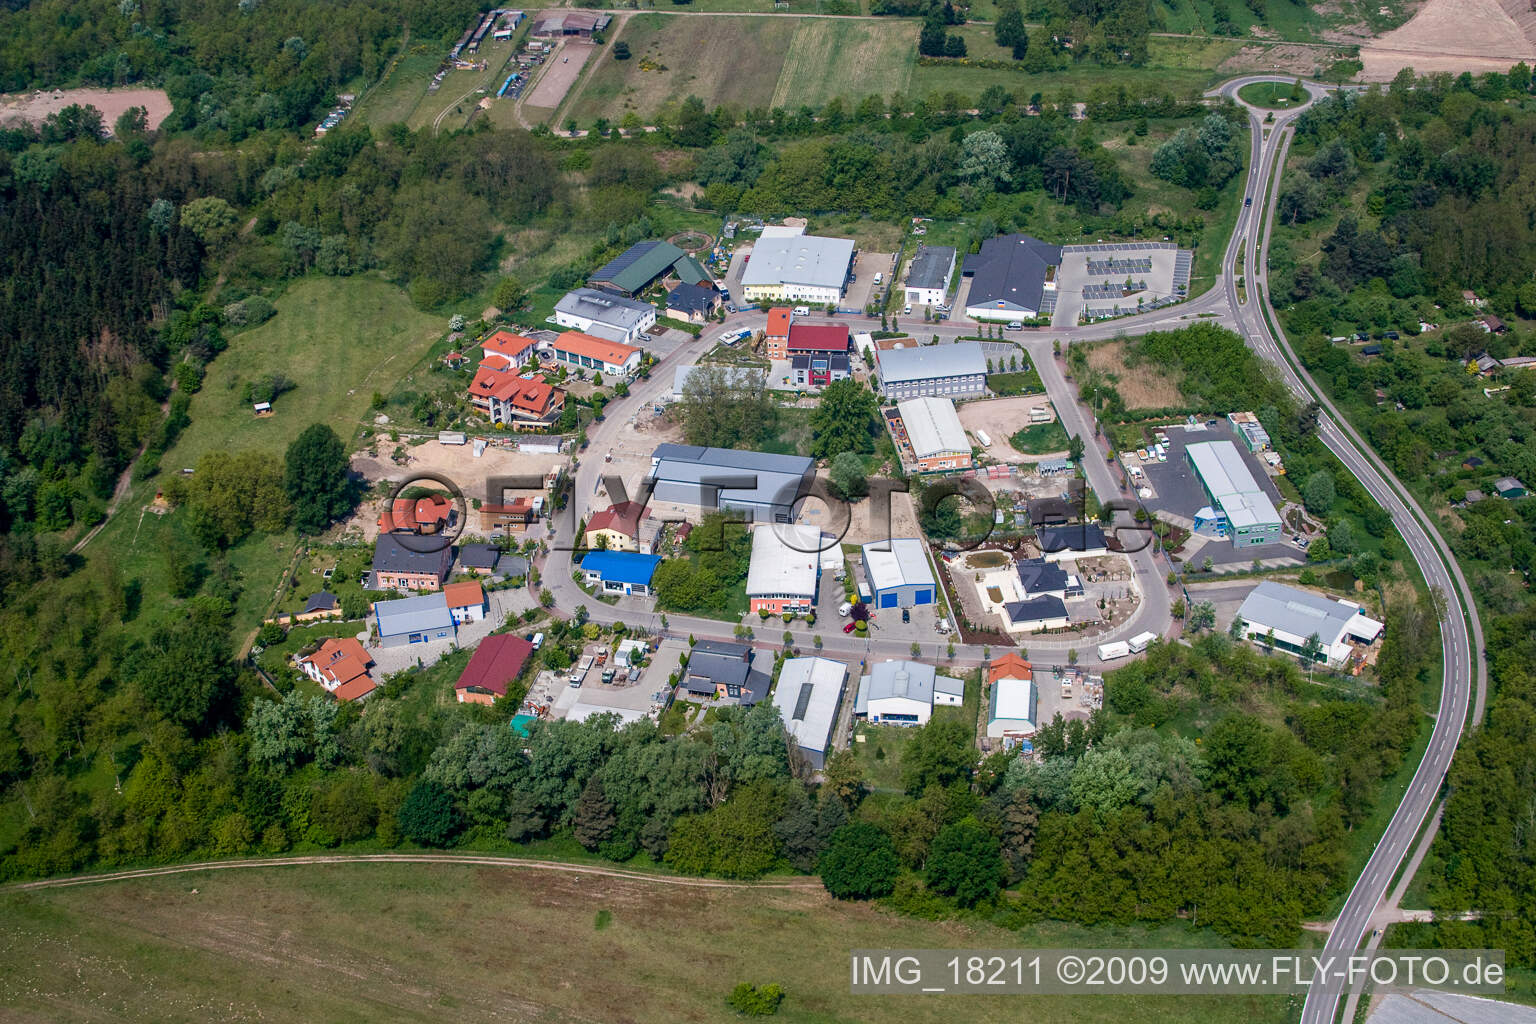 Vue aérienne de Zone industrielle à Jockgrim dans le département Rhénanie-Palatinat, Allemagne